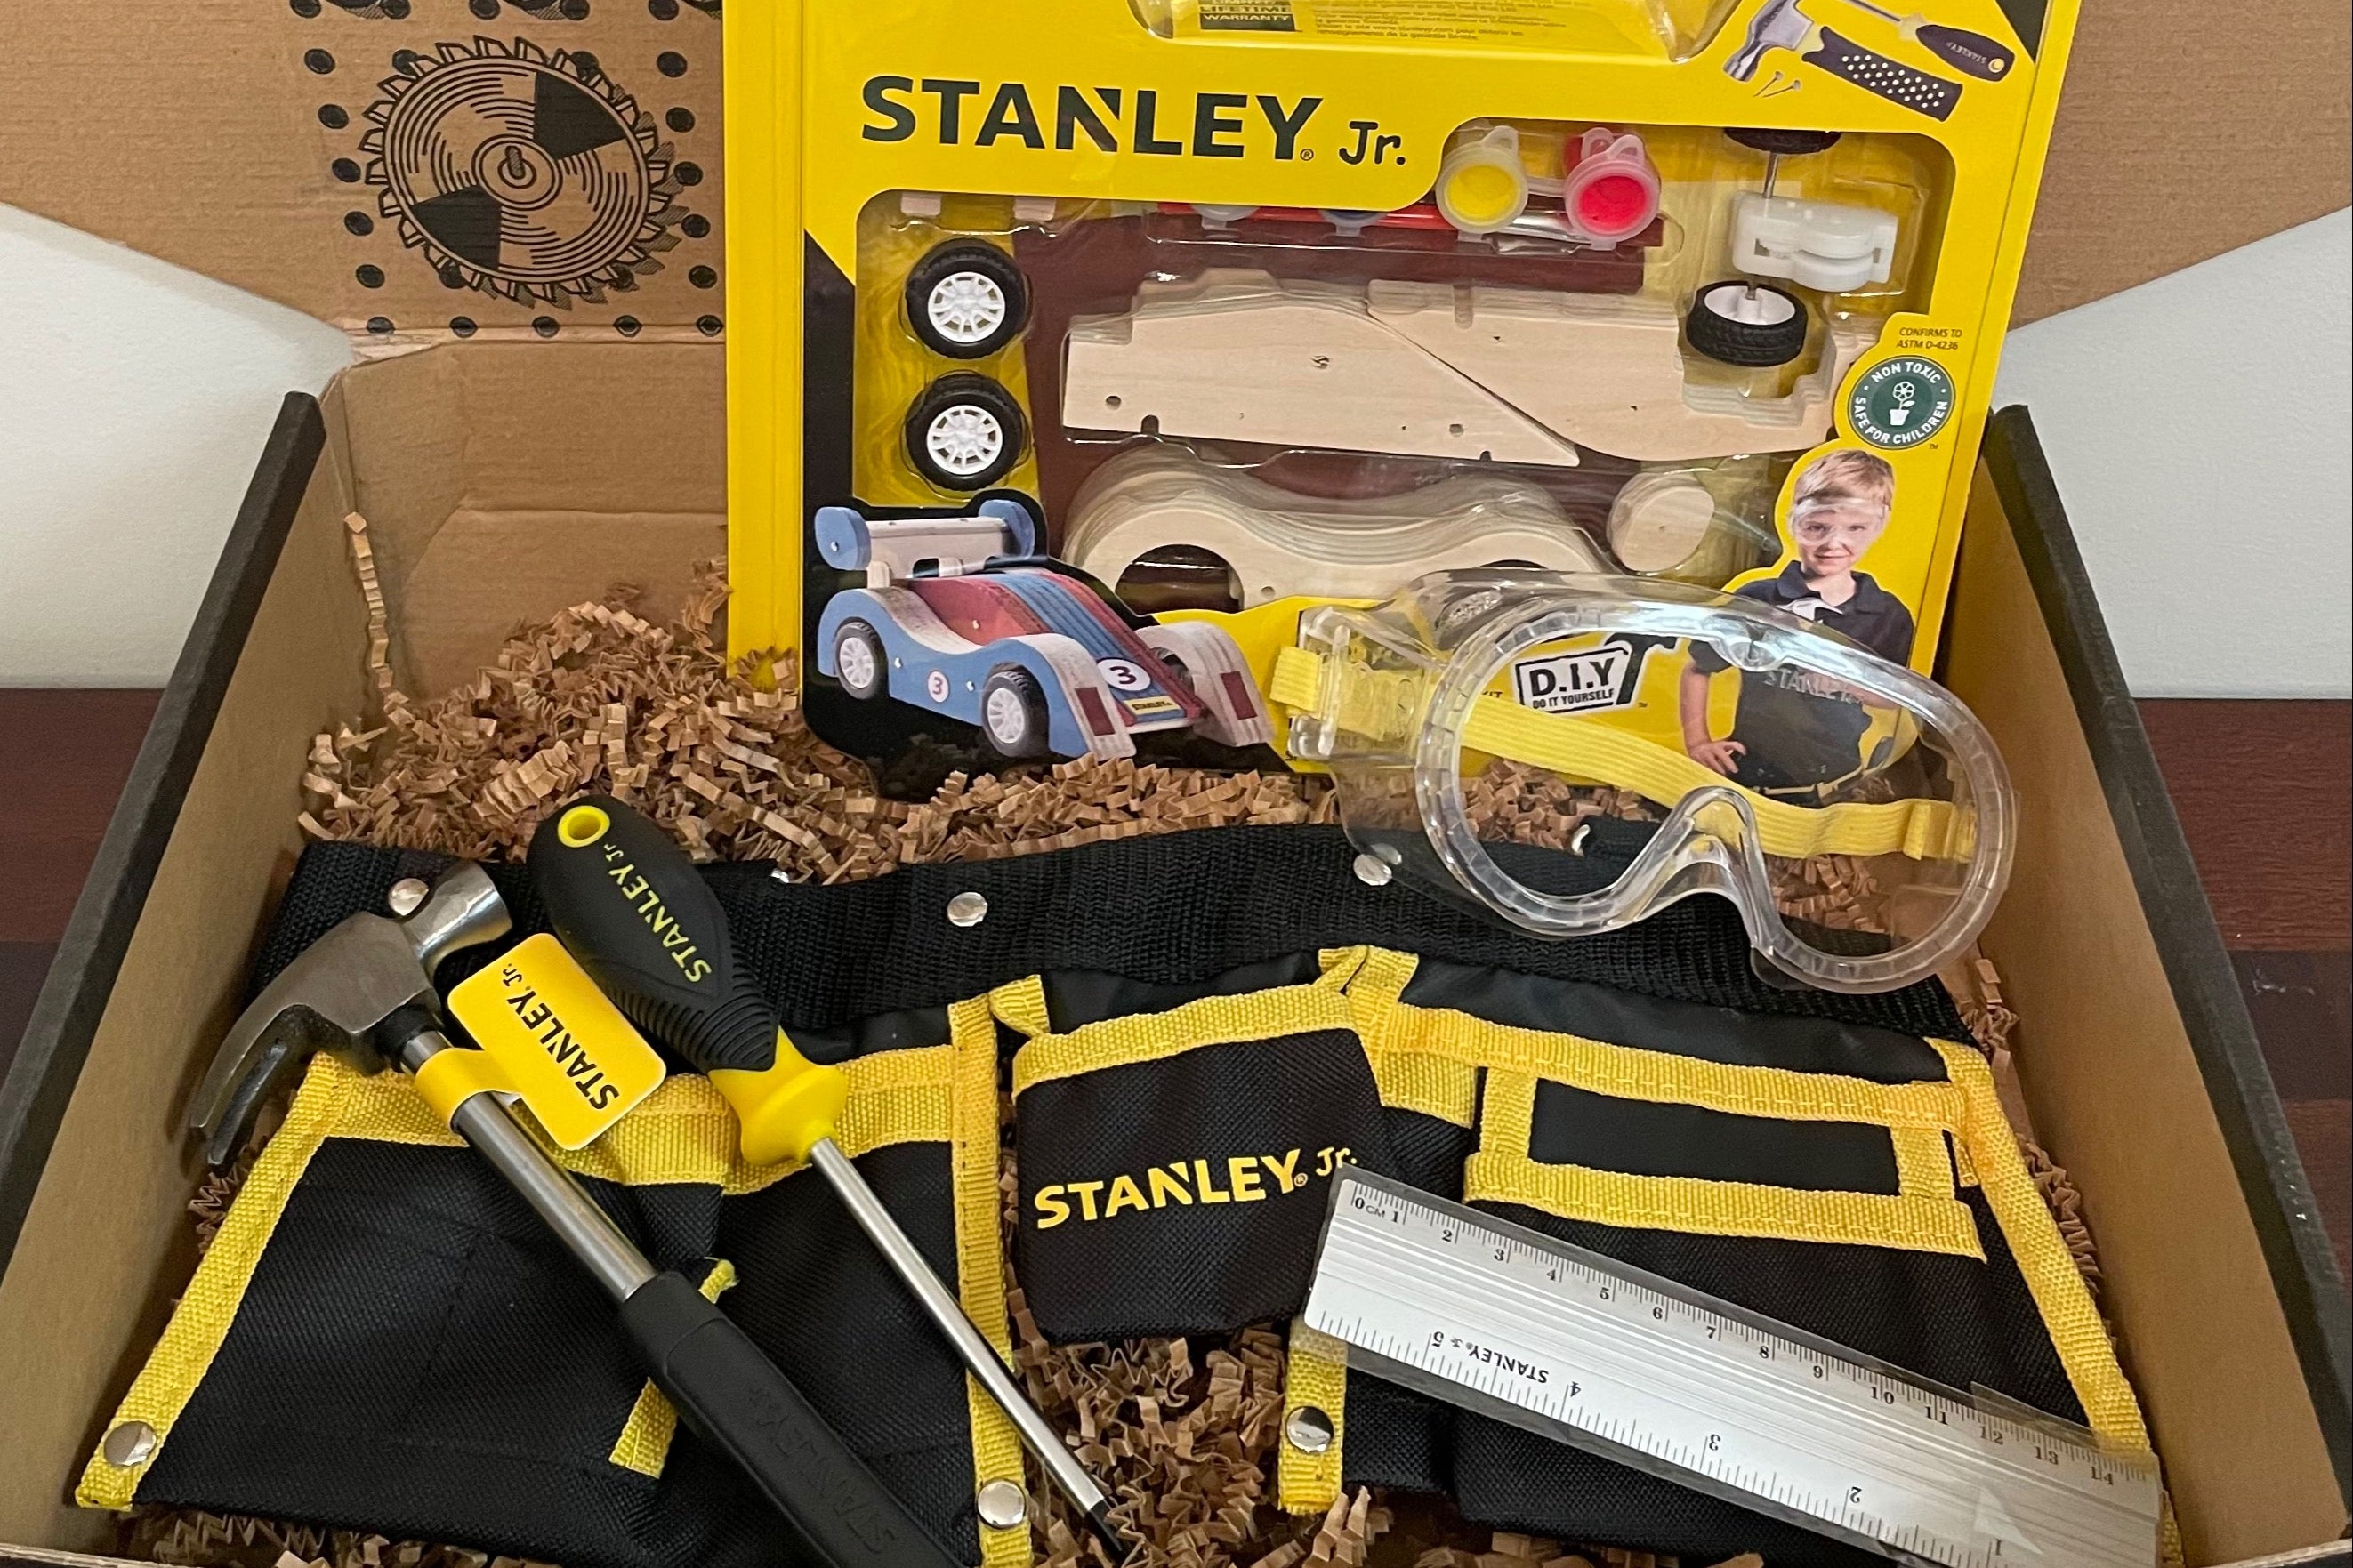 Stanley Jr. 3 Piece Garden Toolset - Black, Yellow